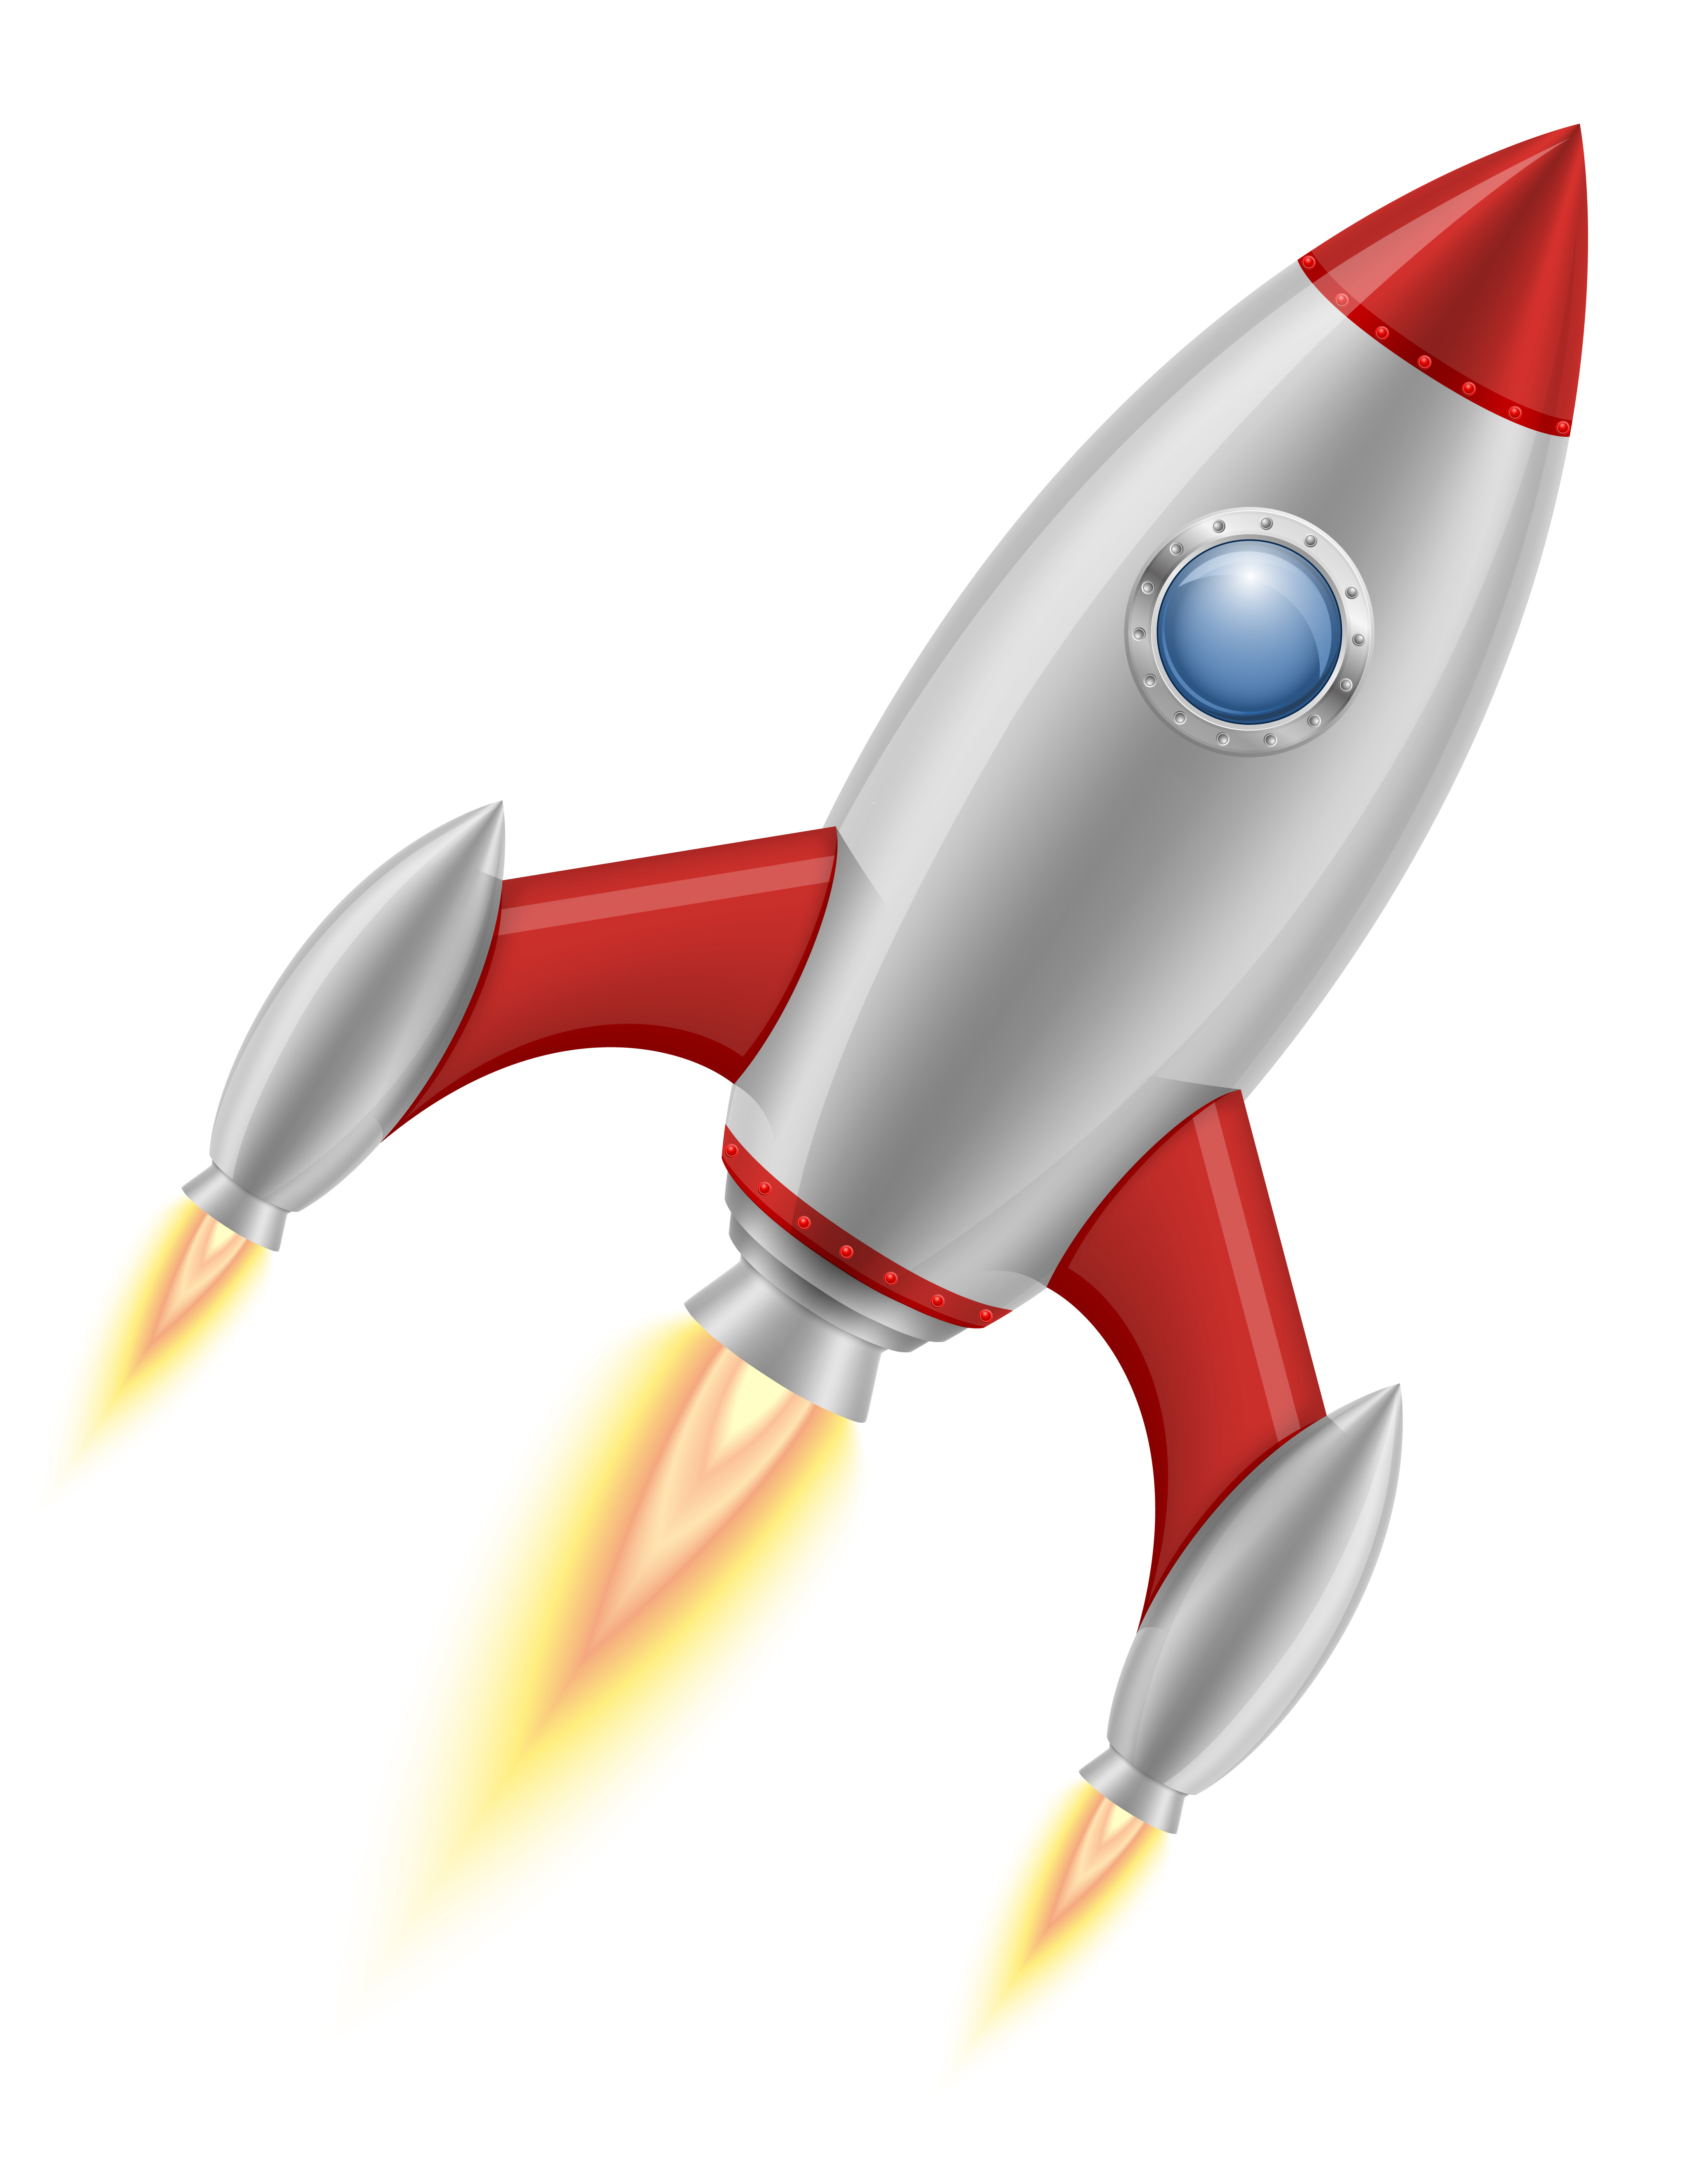 space rocket retro spaceship vector illustration 494303